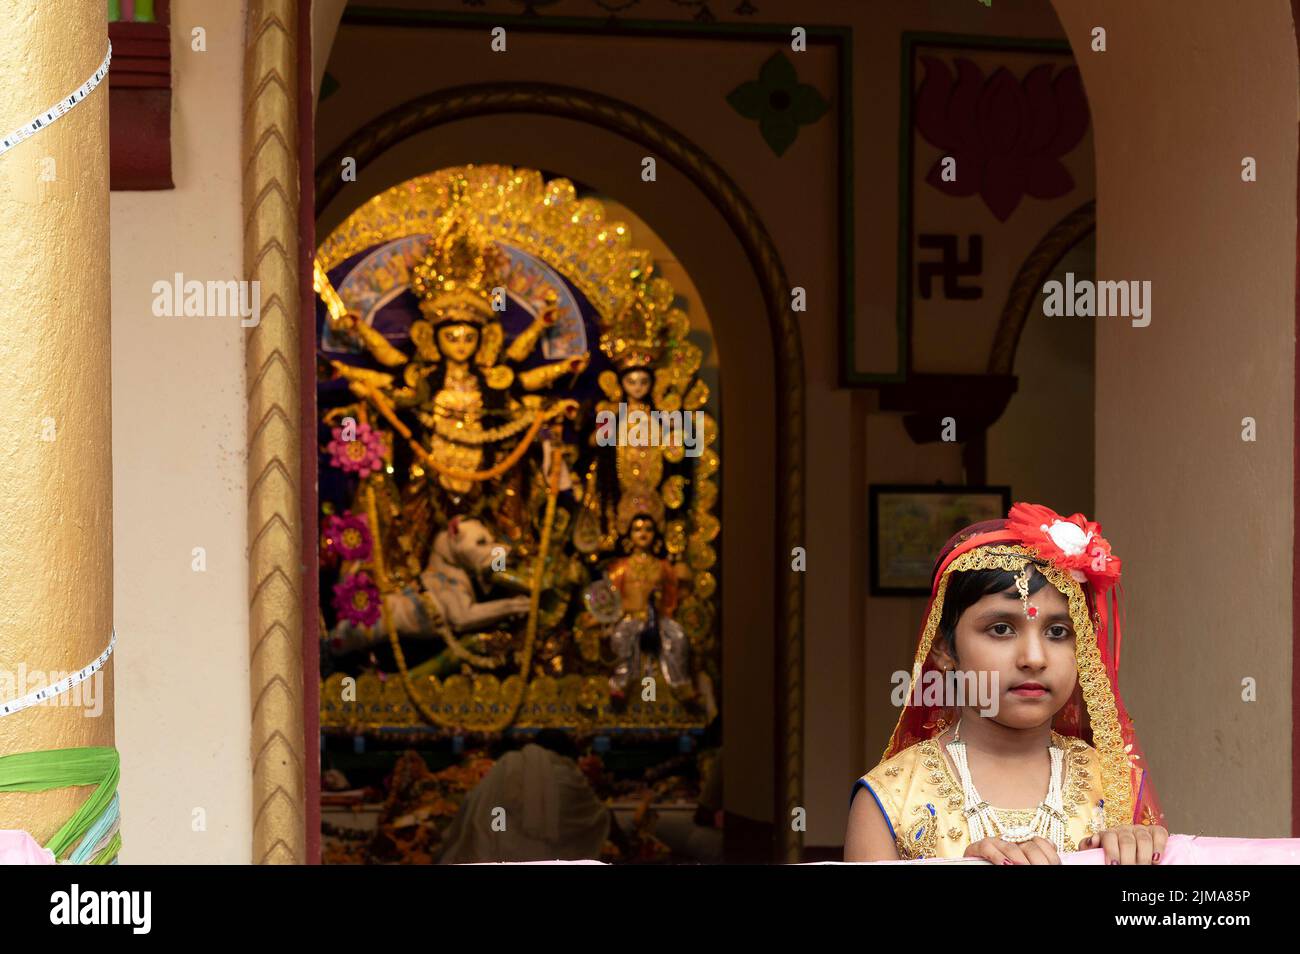 Howrah,India -26th ottobre 2020 : ragazza bengalese bambino in abito festivo, sorridente e posato con la dea Durga in background, all'interno di una casa di vecchiaia. Foto Stock